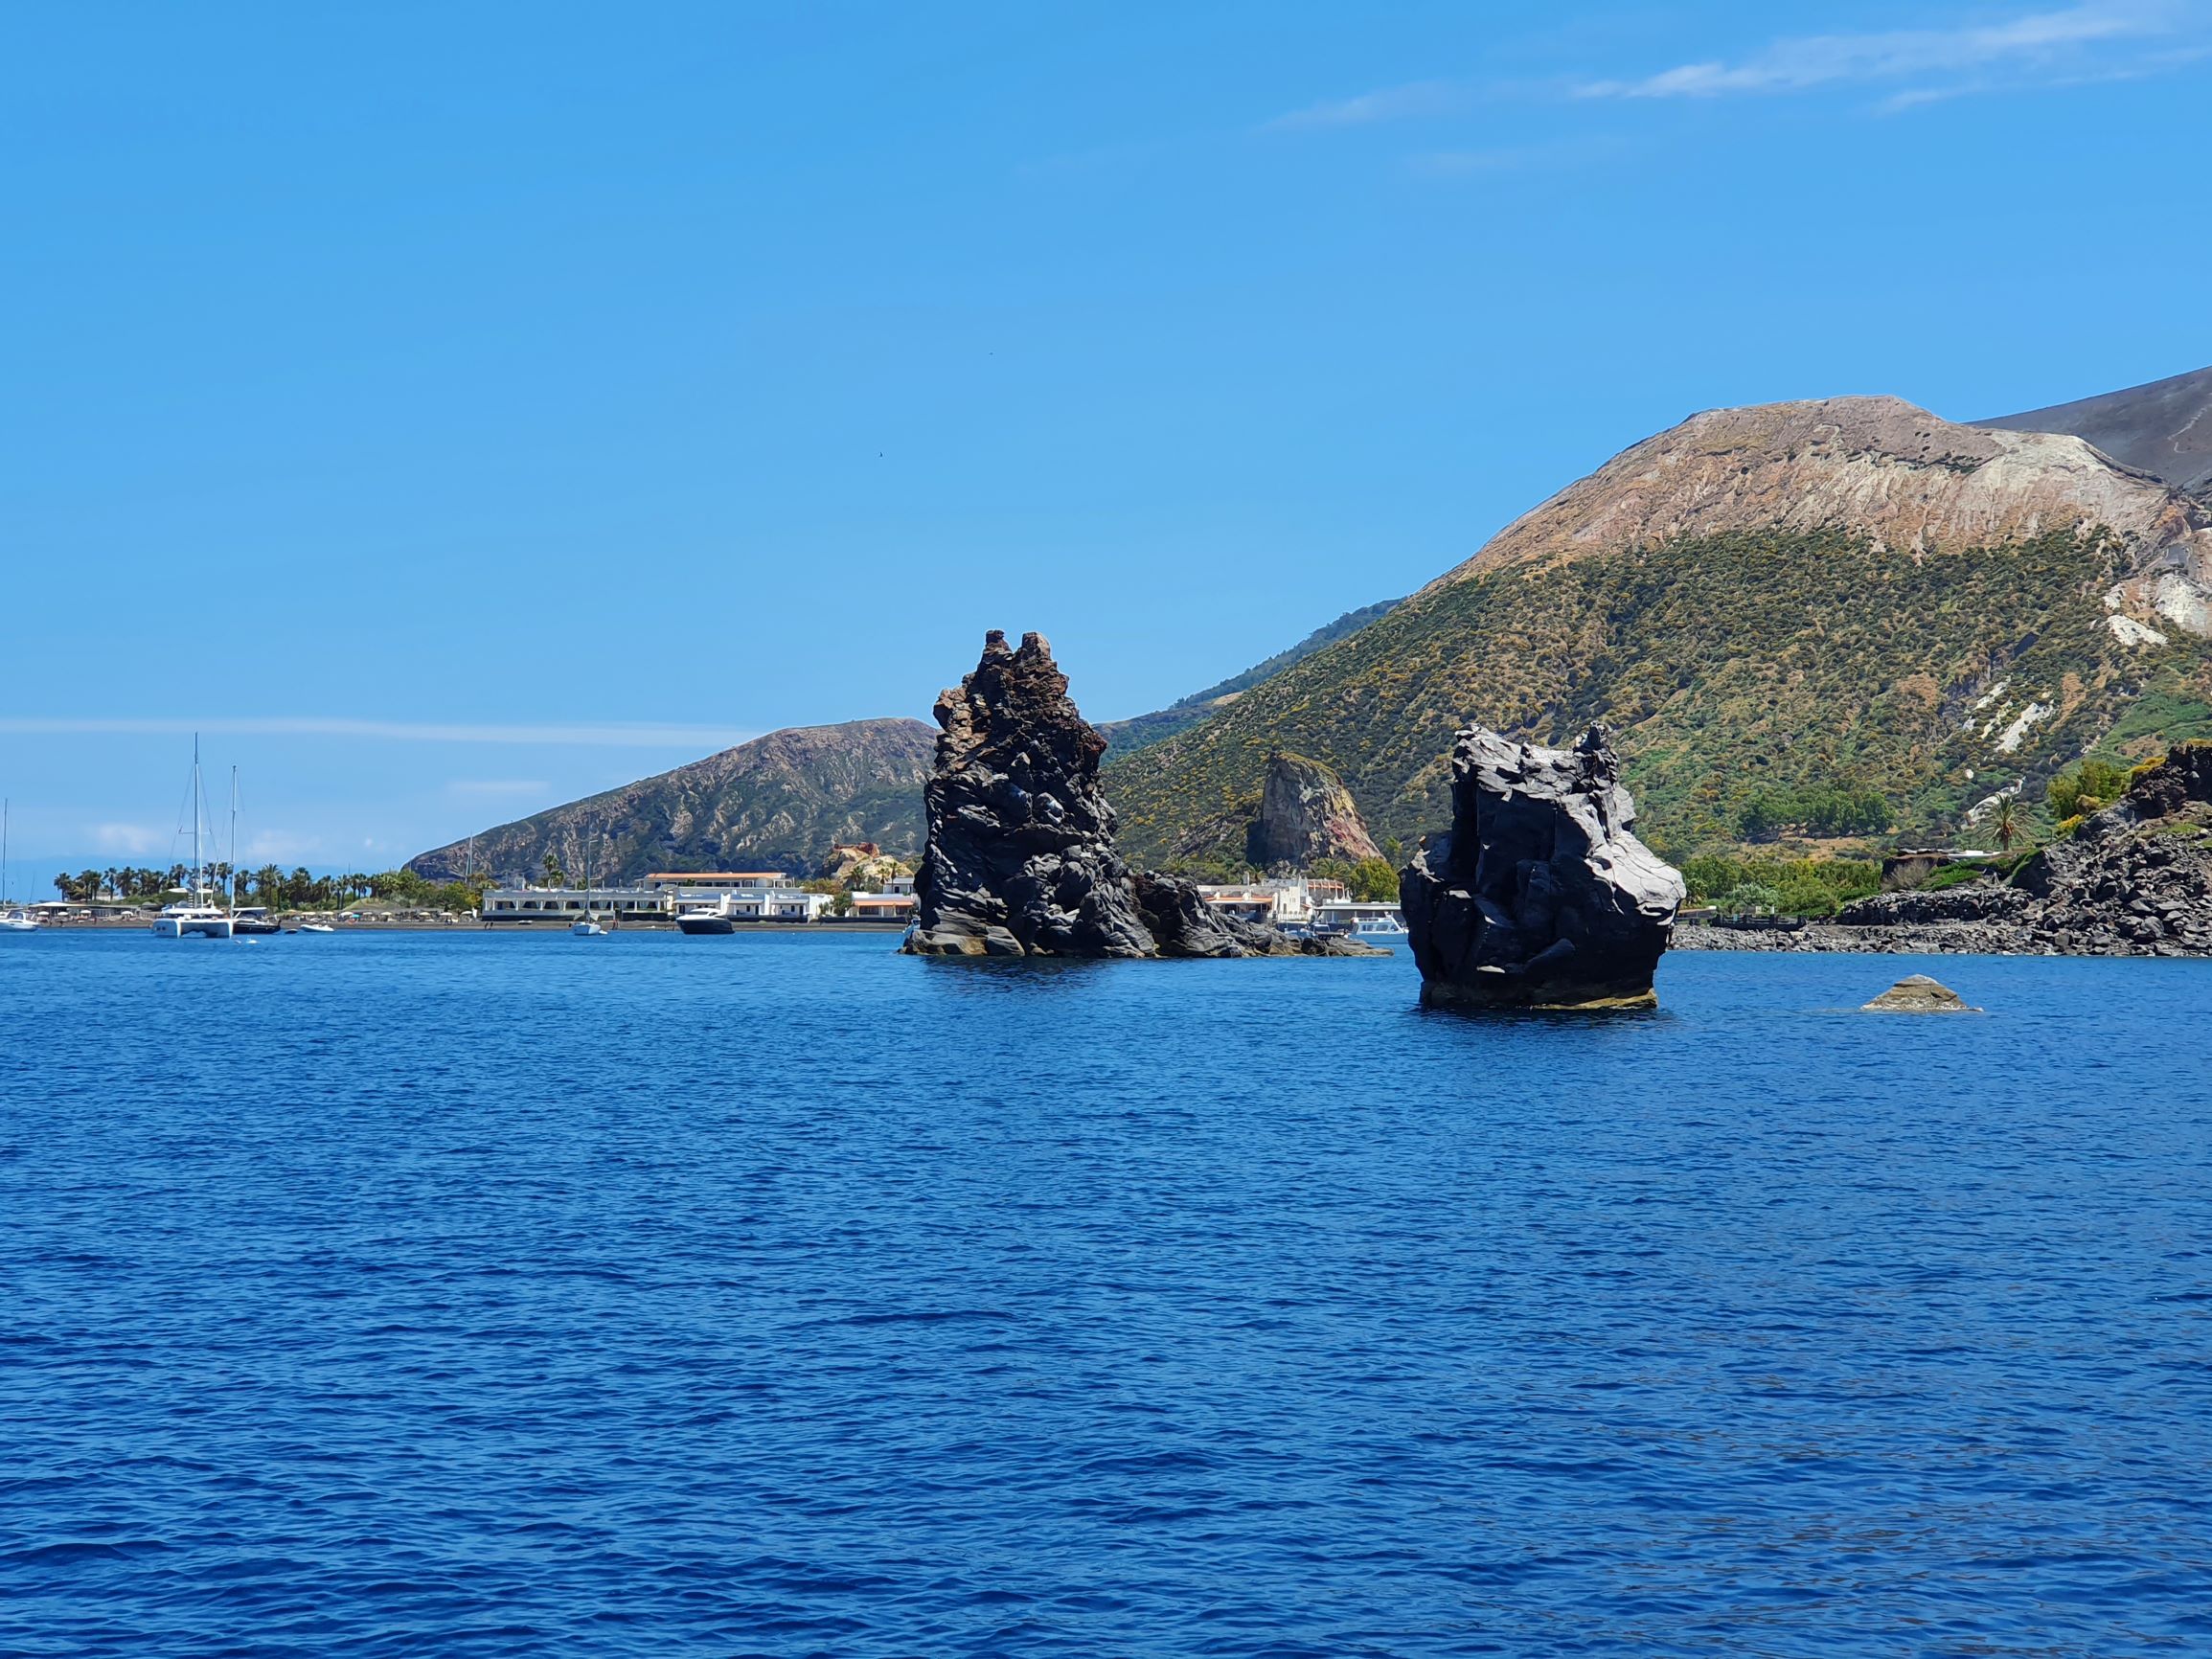 Felsen aus Lavagestein in einer Bucht vor dem Vulkan auf Vulcano.